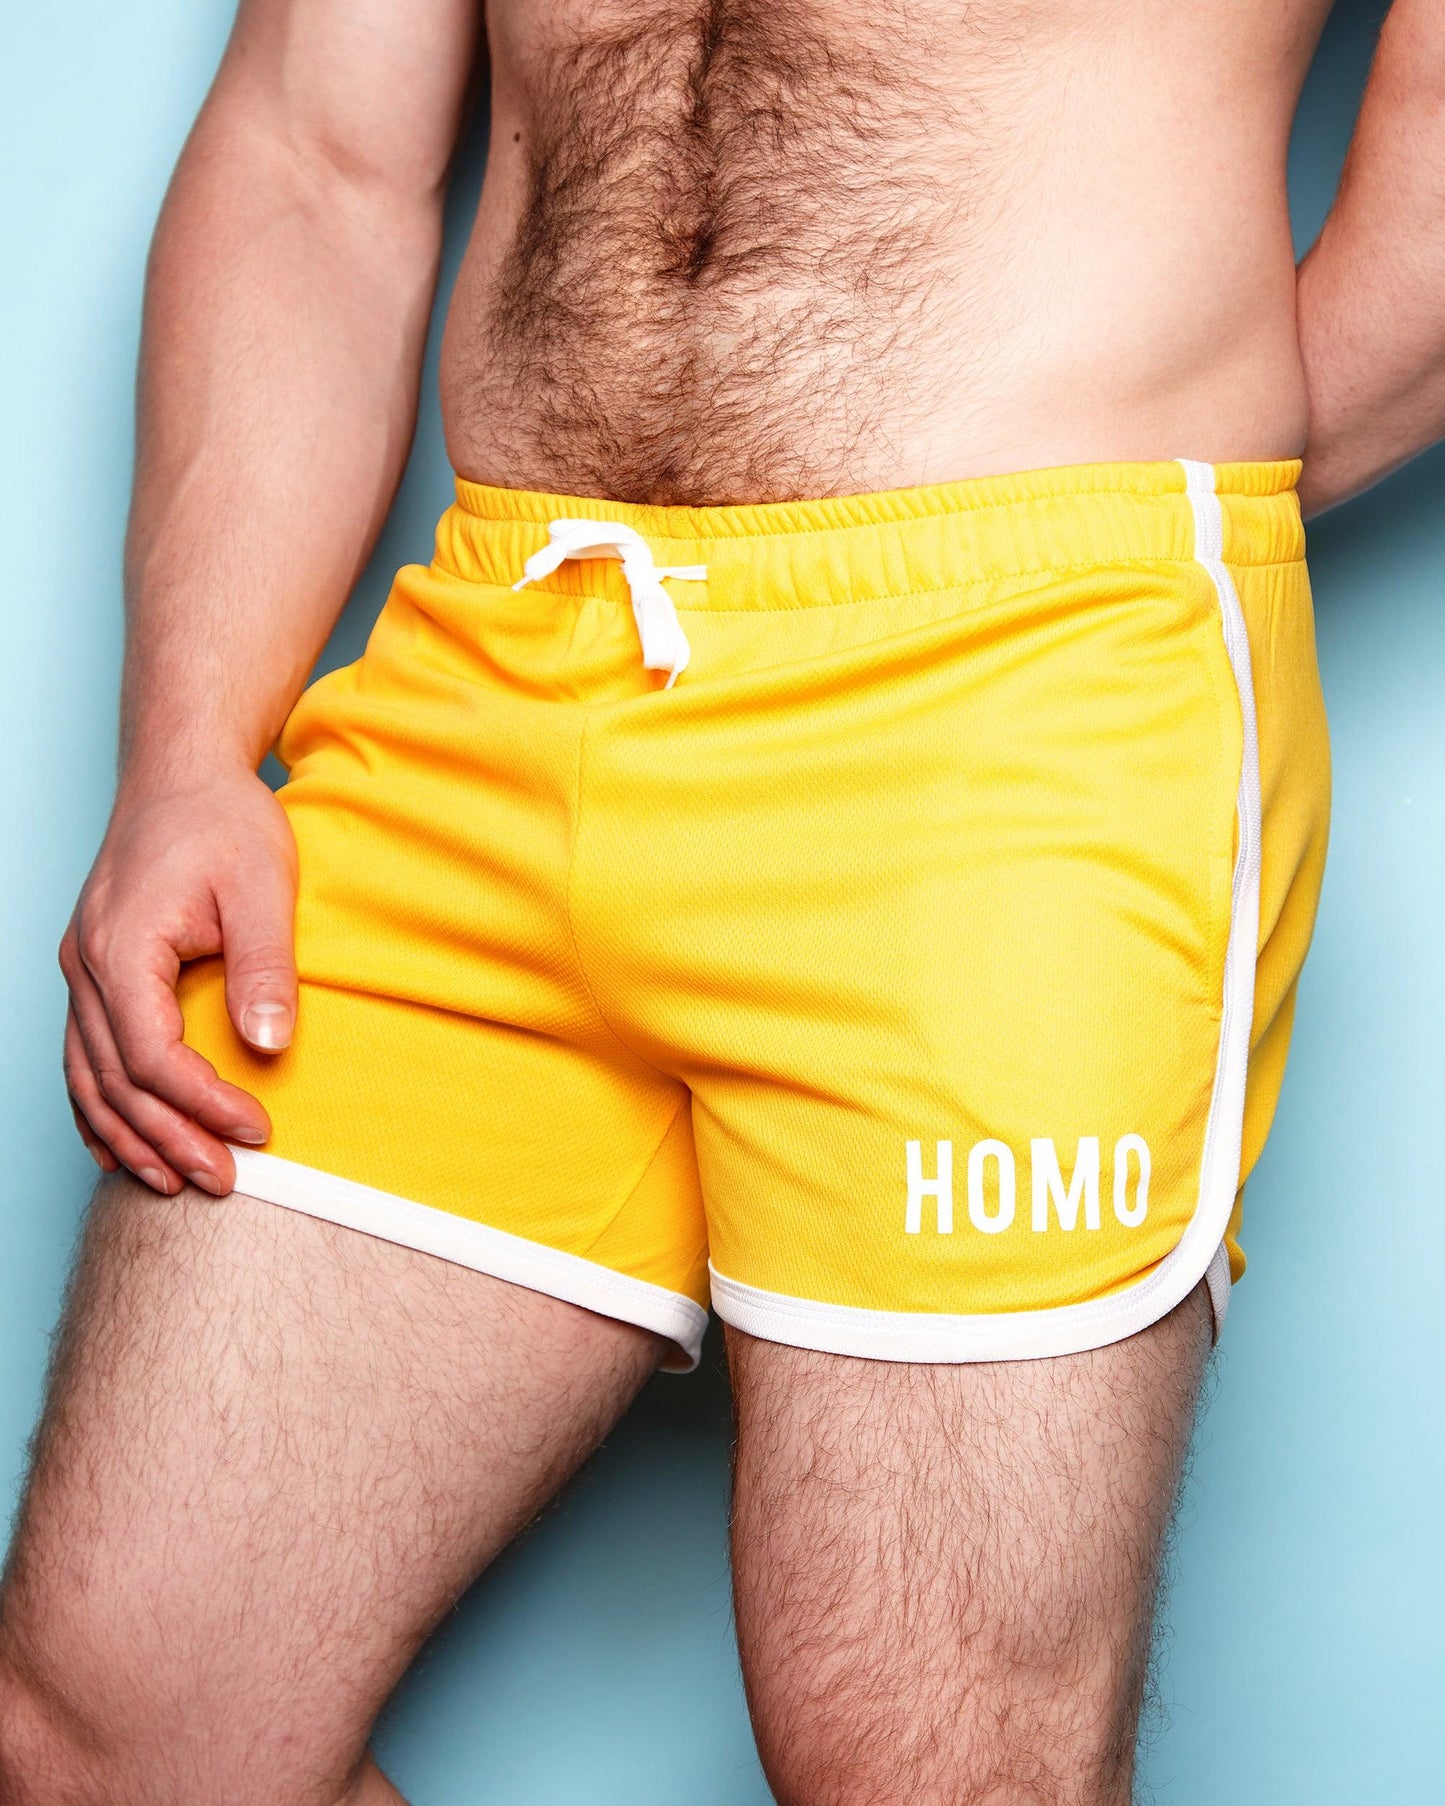 HOMO Short Shorts - yellow/white - HOMOLONDON